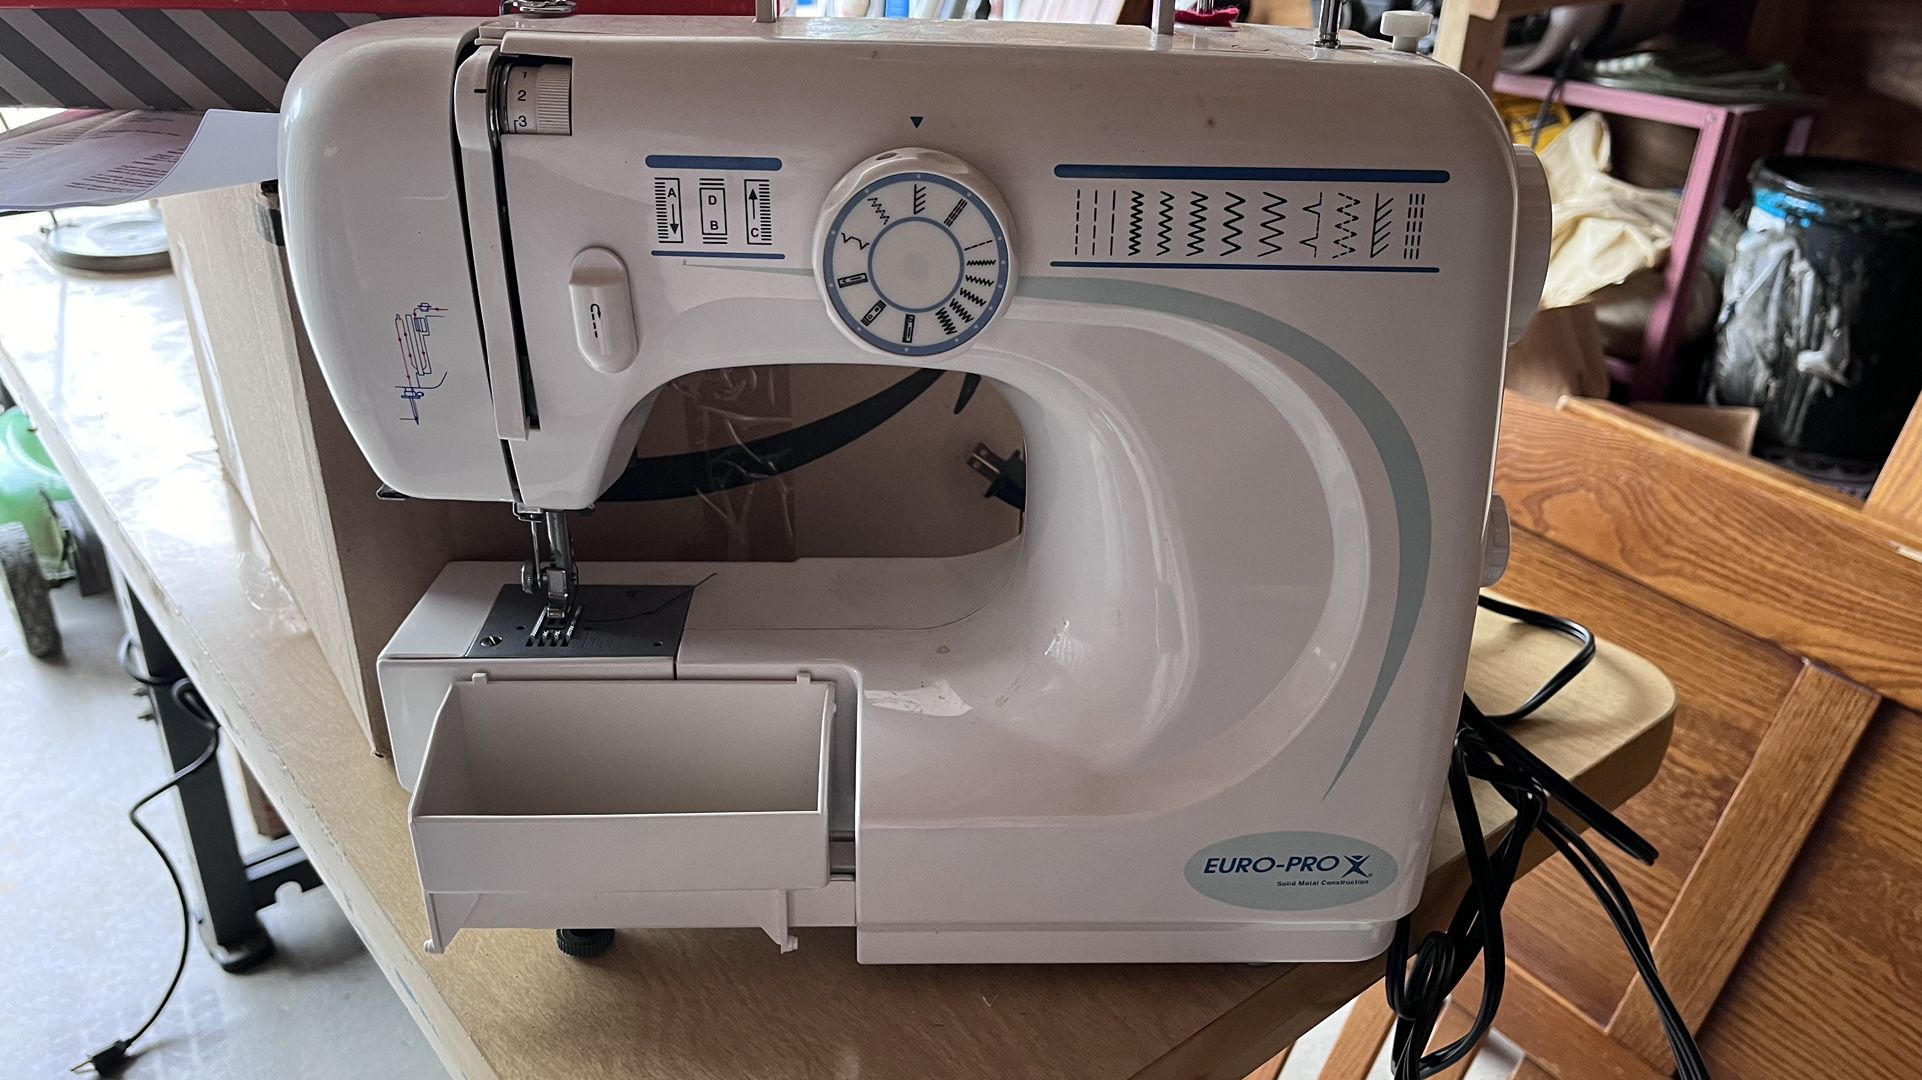 Euro Pro Sewing Machine 